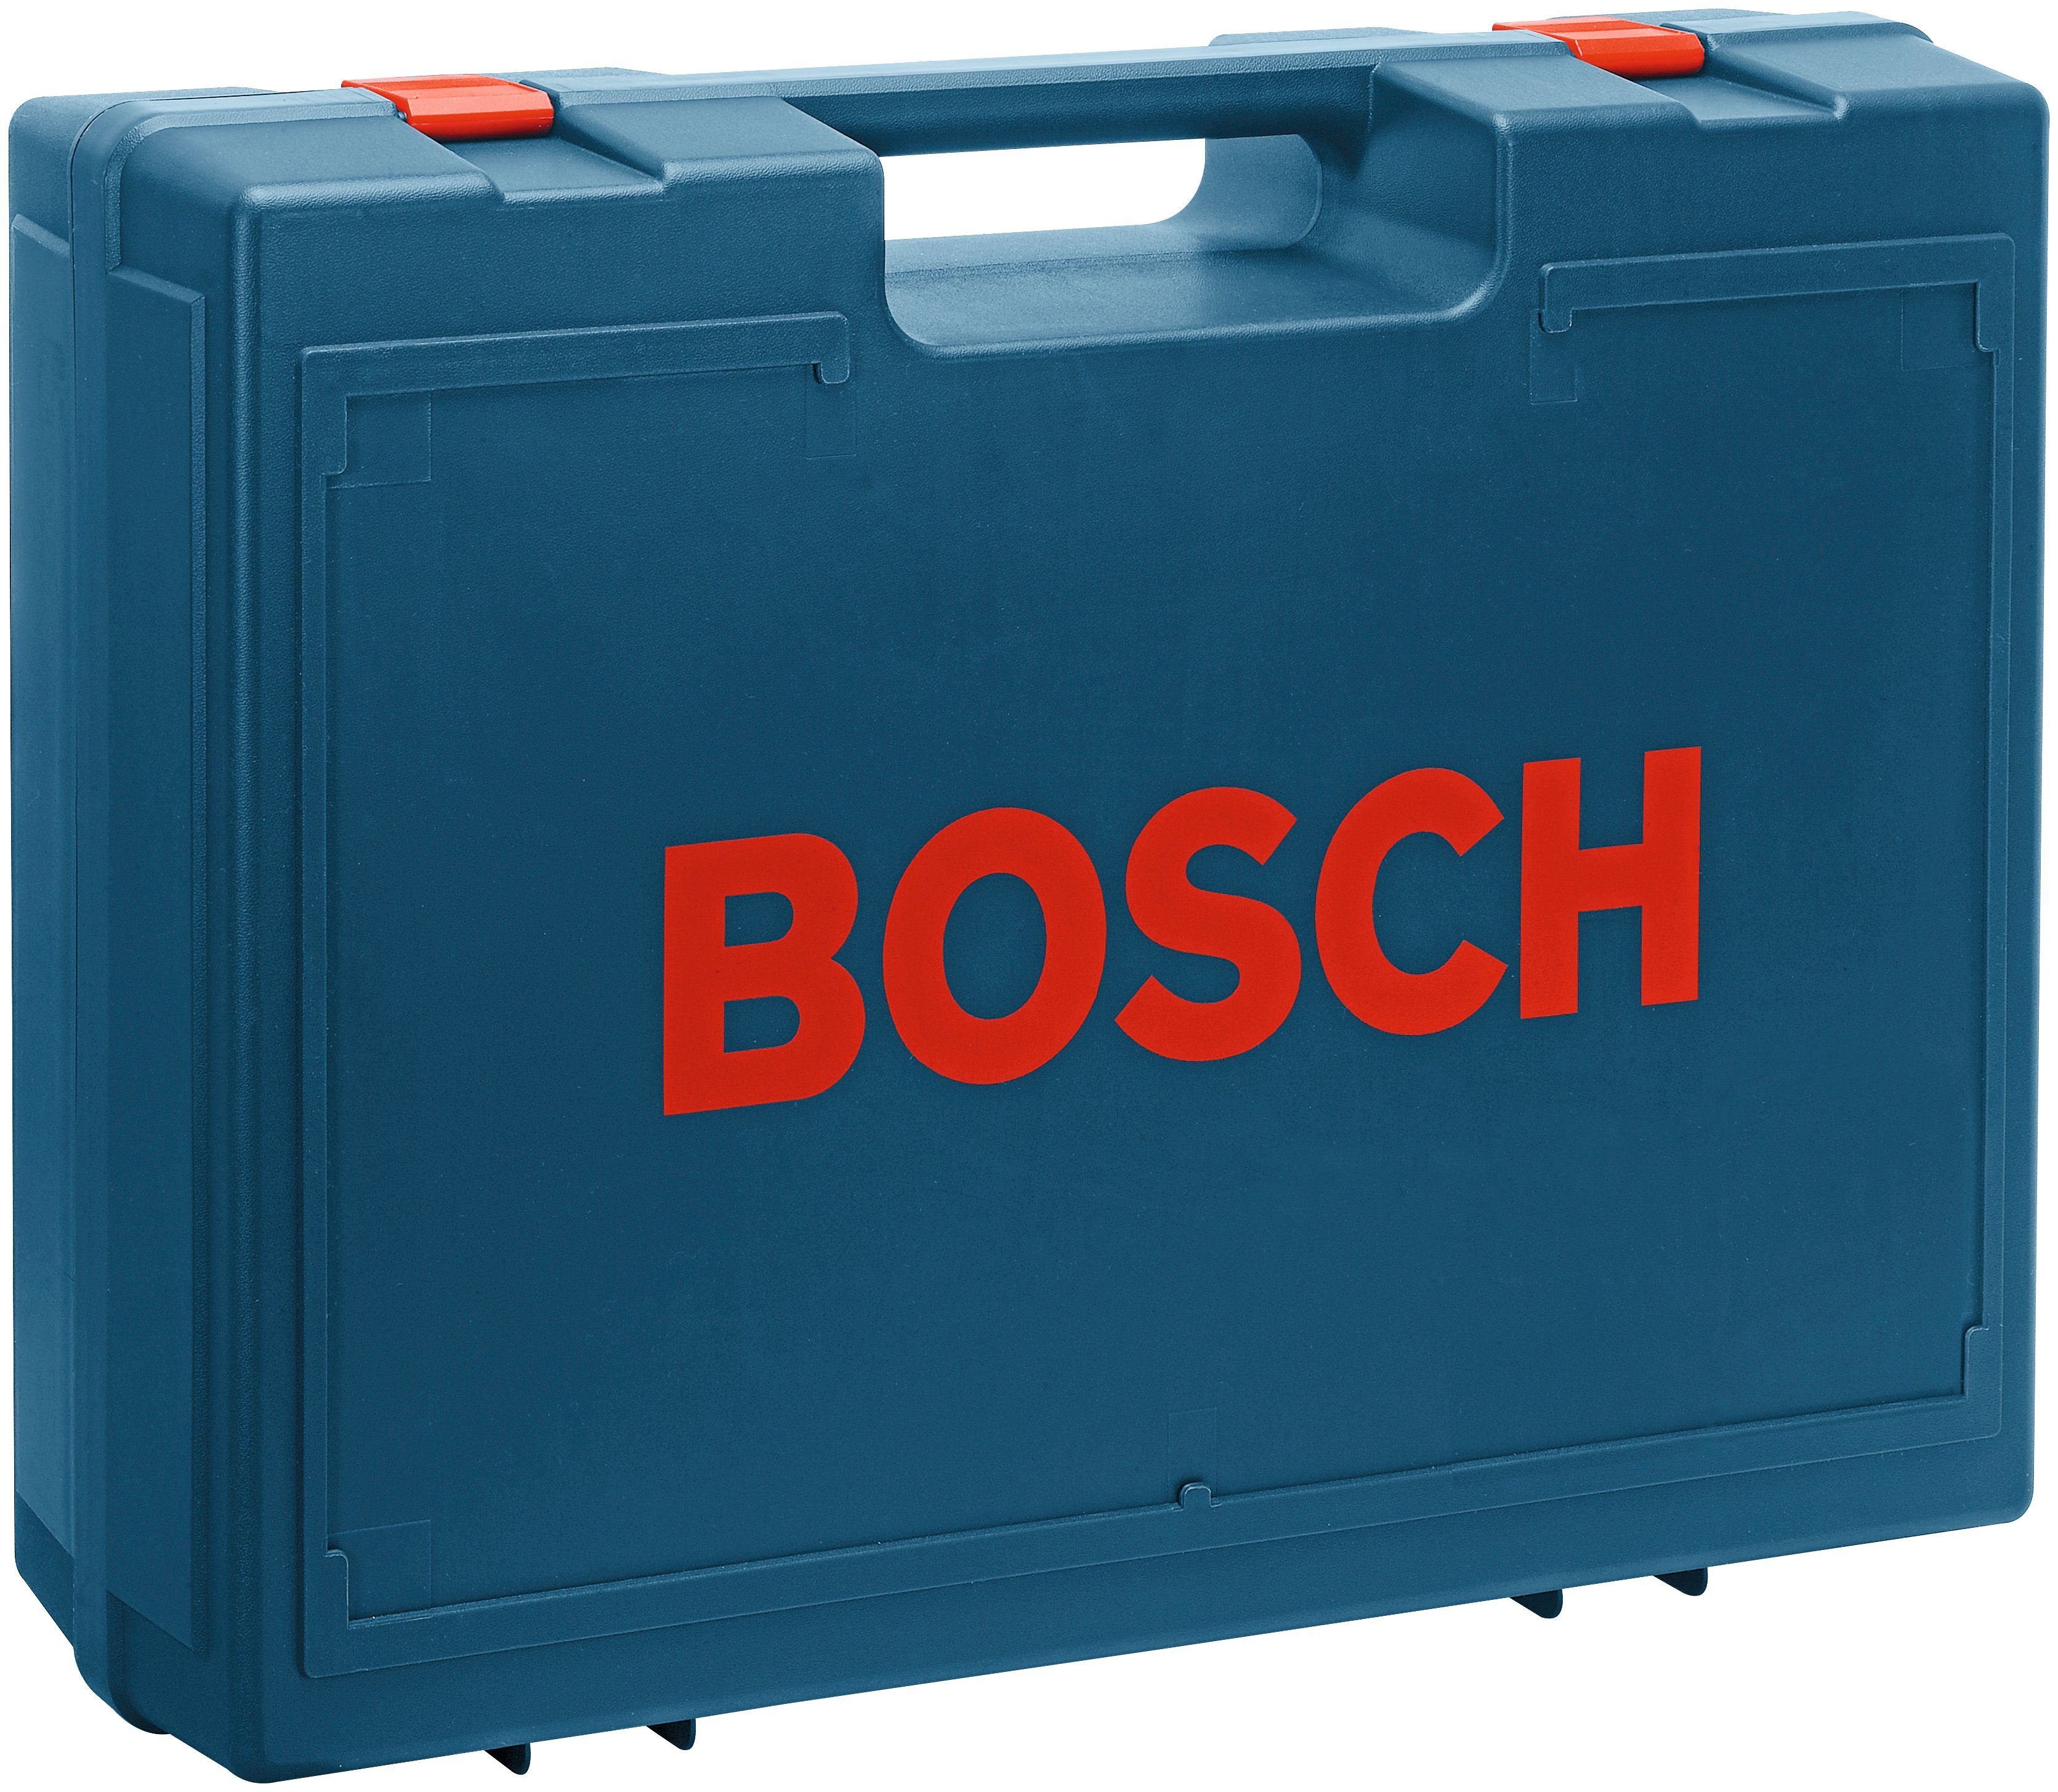 GEX 24000 Bosch AE, Professional 125-1 Exzenterschleifer U/min